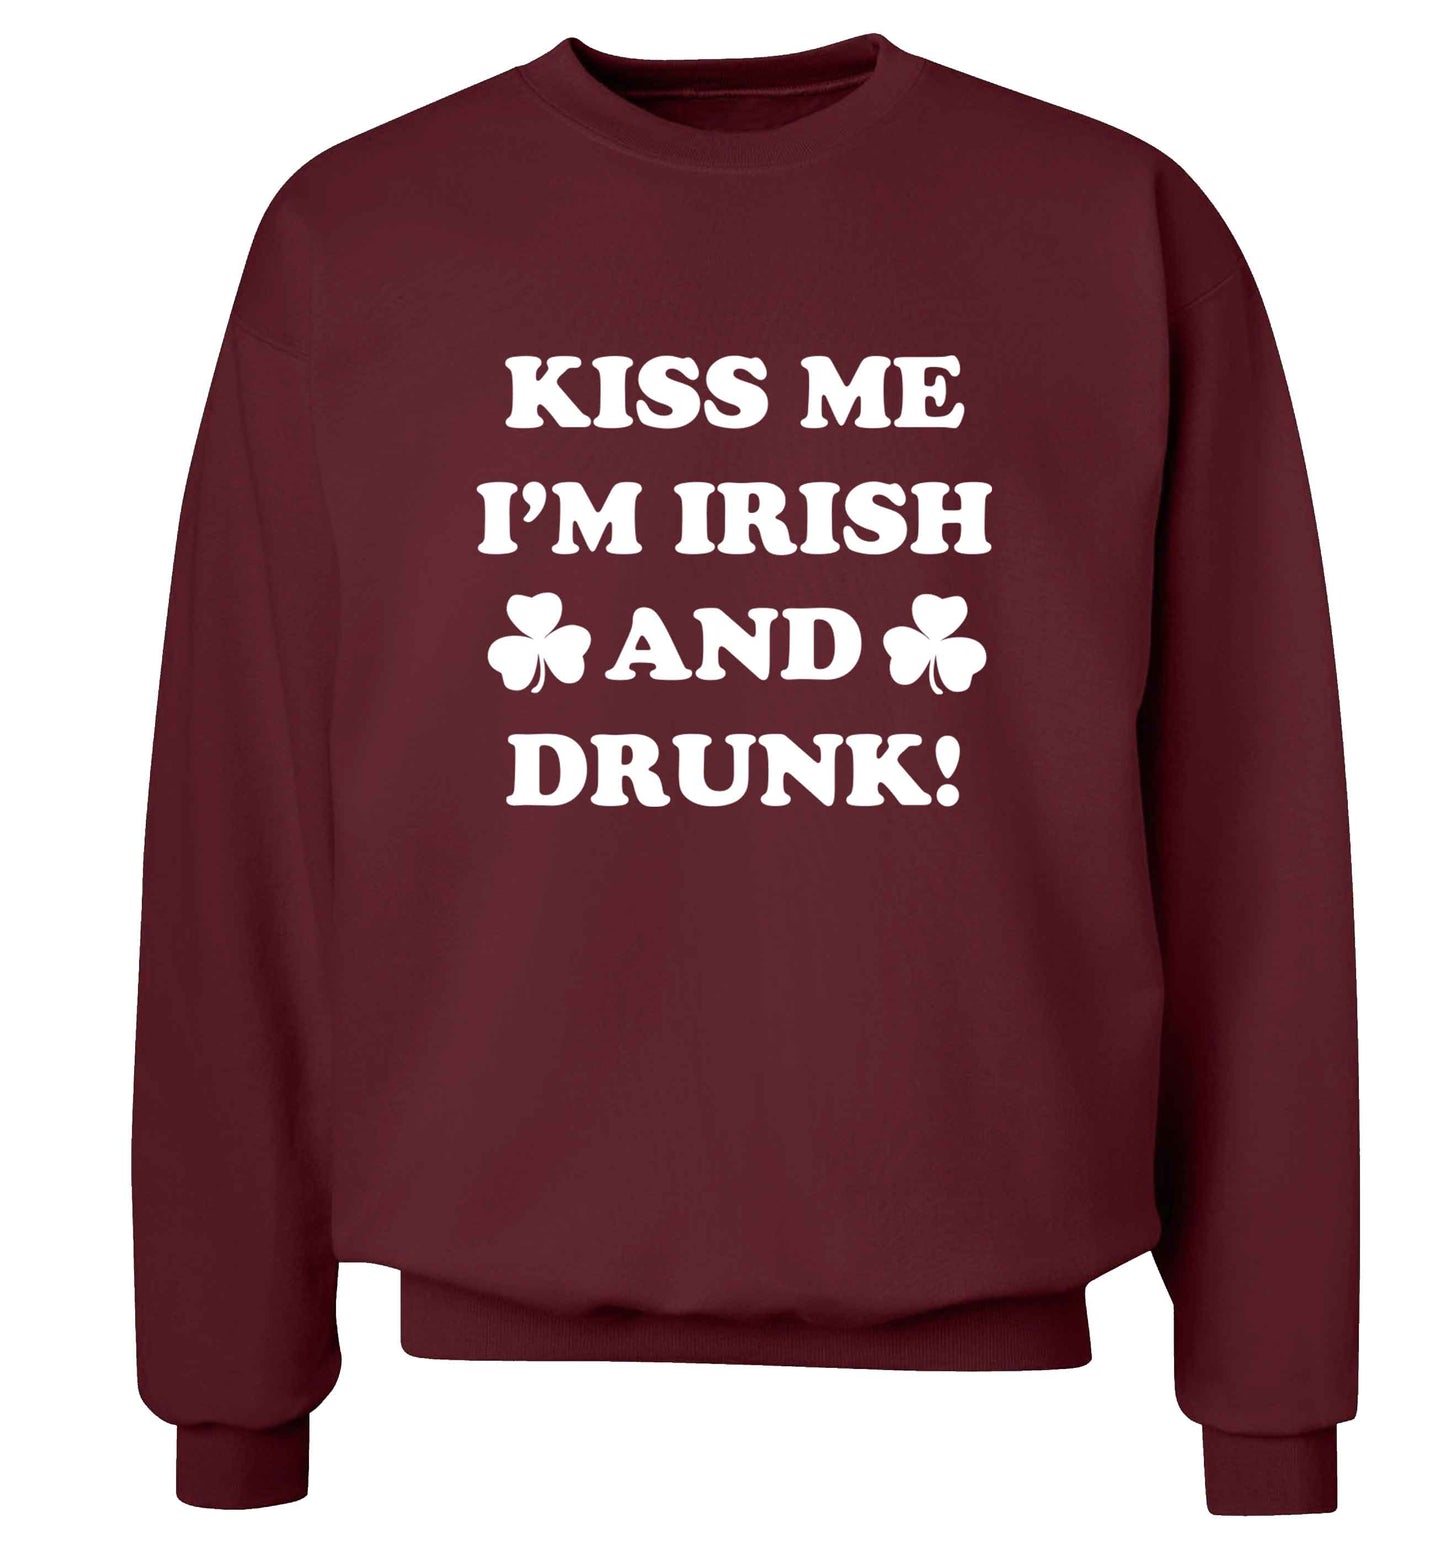 Kiss me I'm Irish and drunk adult's unisex maroon sweater 2XL